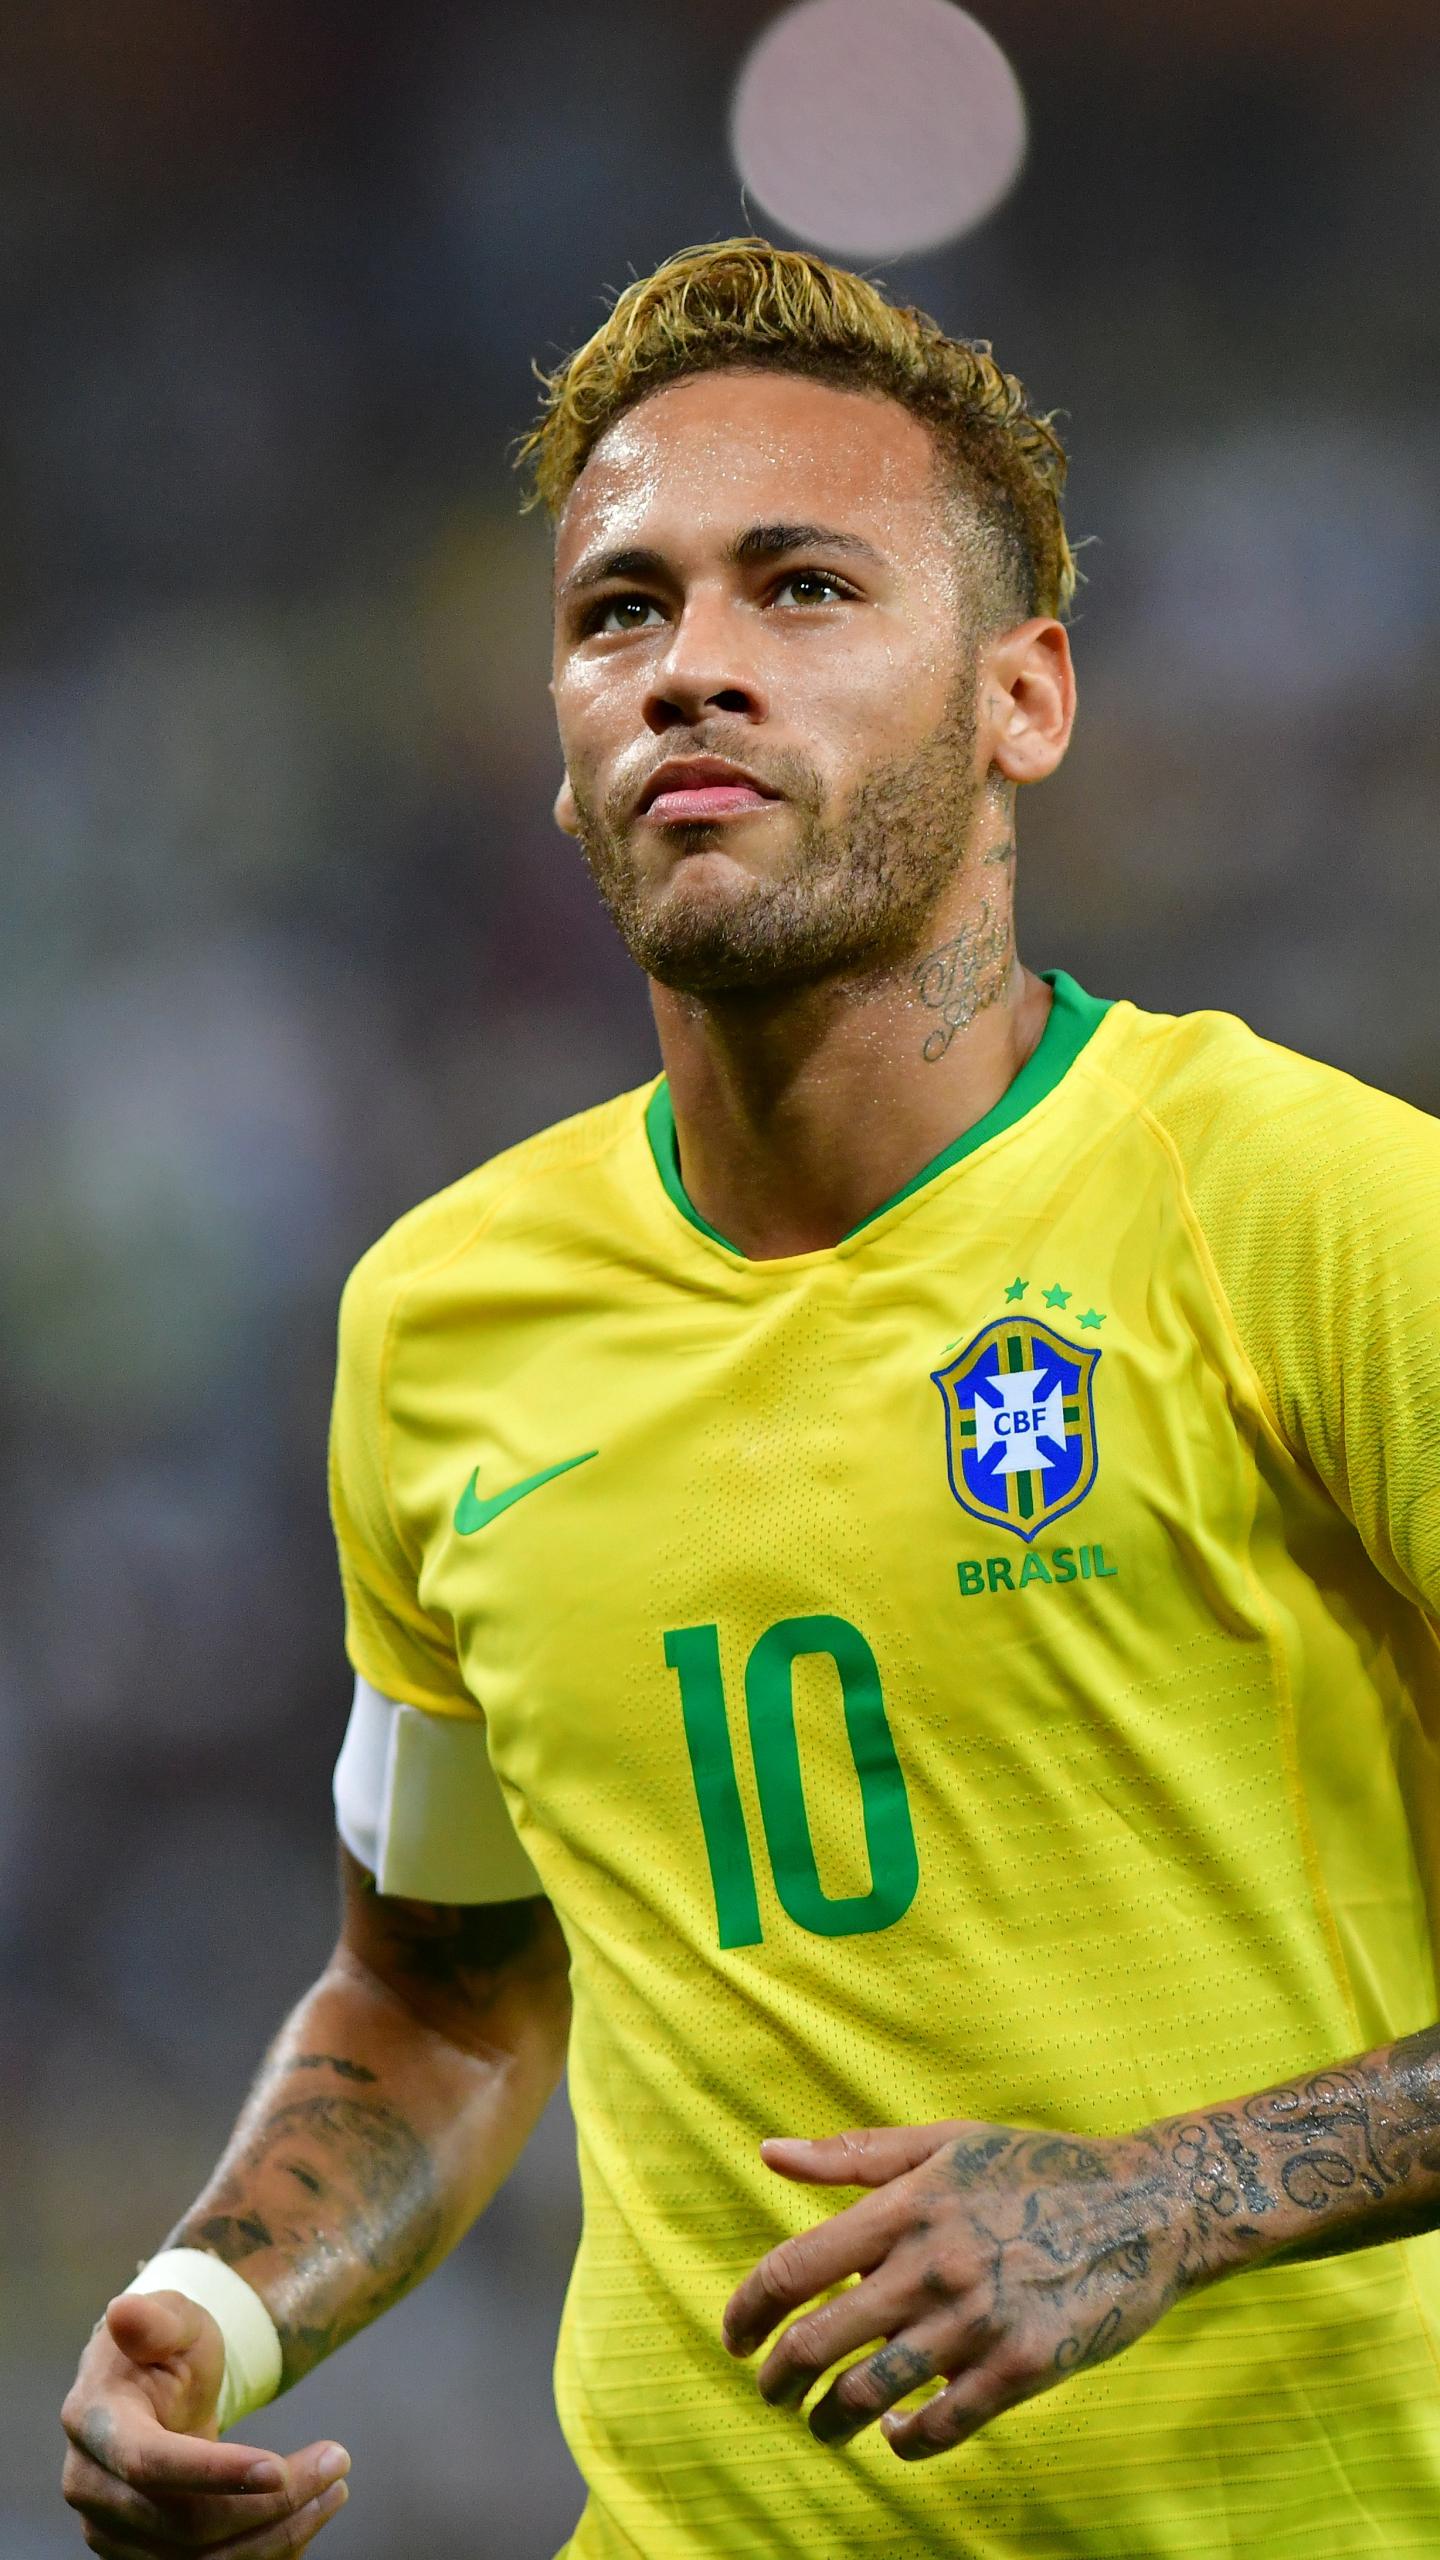 Tải xuống APK Neymar Wallpapers miễn phí và đơn giản, để trang trí cho chiếc điện thoại, máy tính bảng hay laptop của bạn với hình nền của siêu sao bóng đá người Brazil!